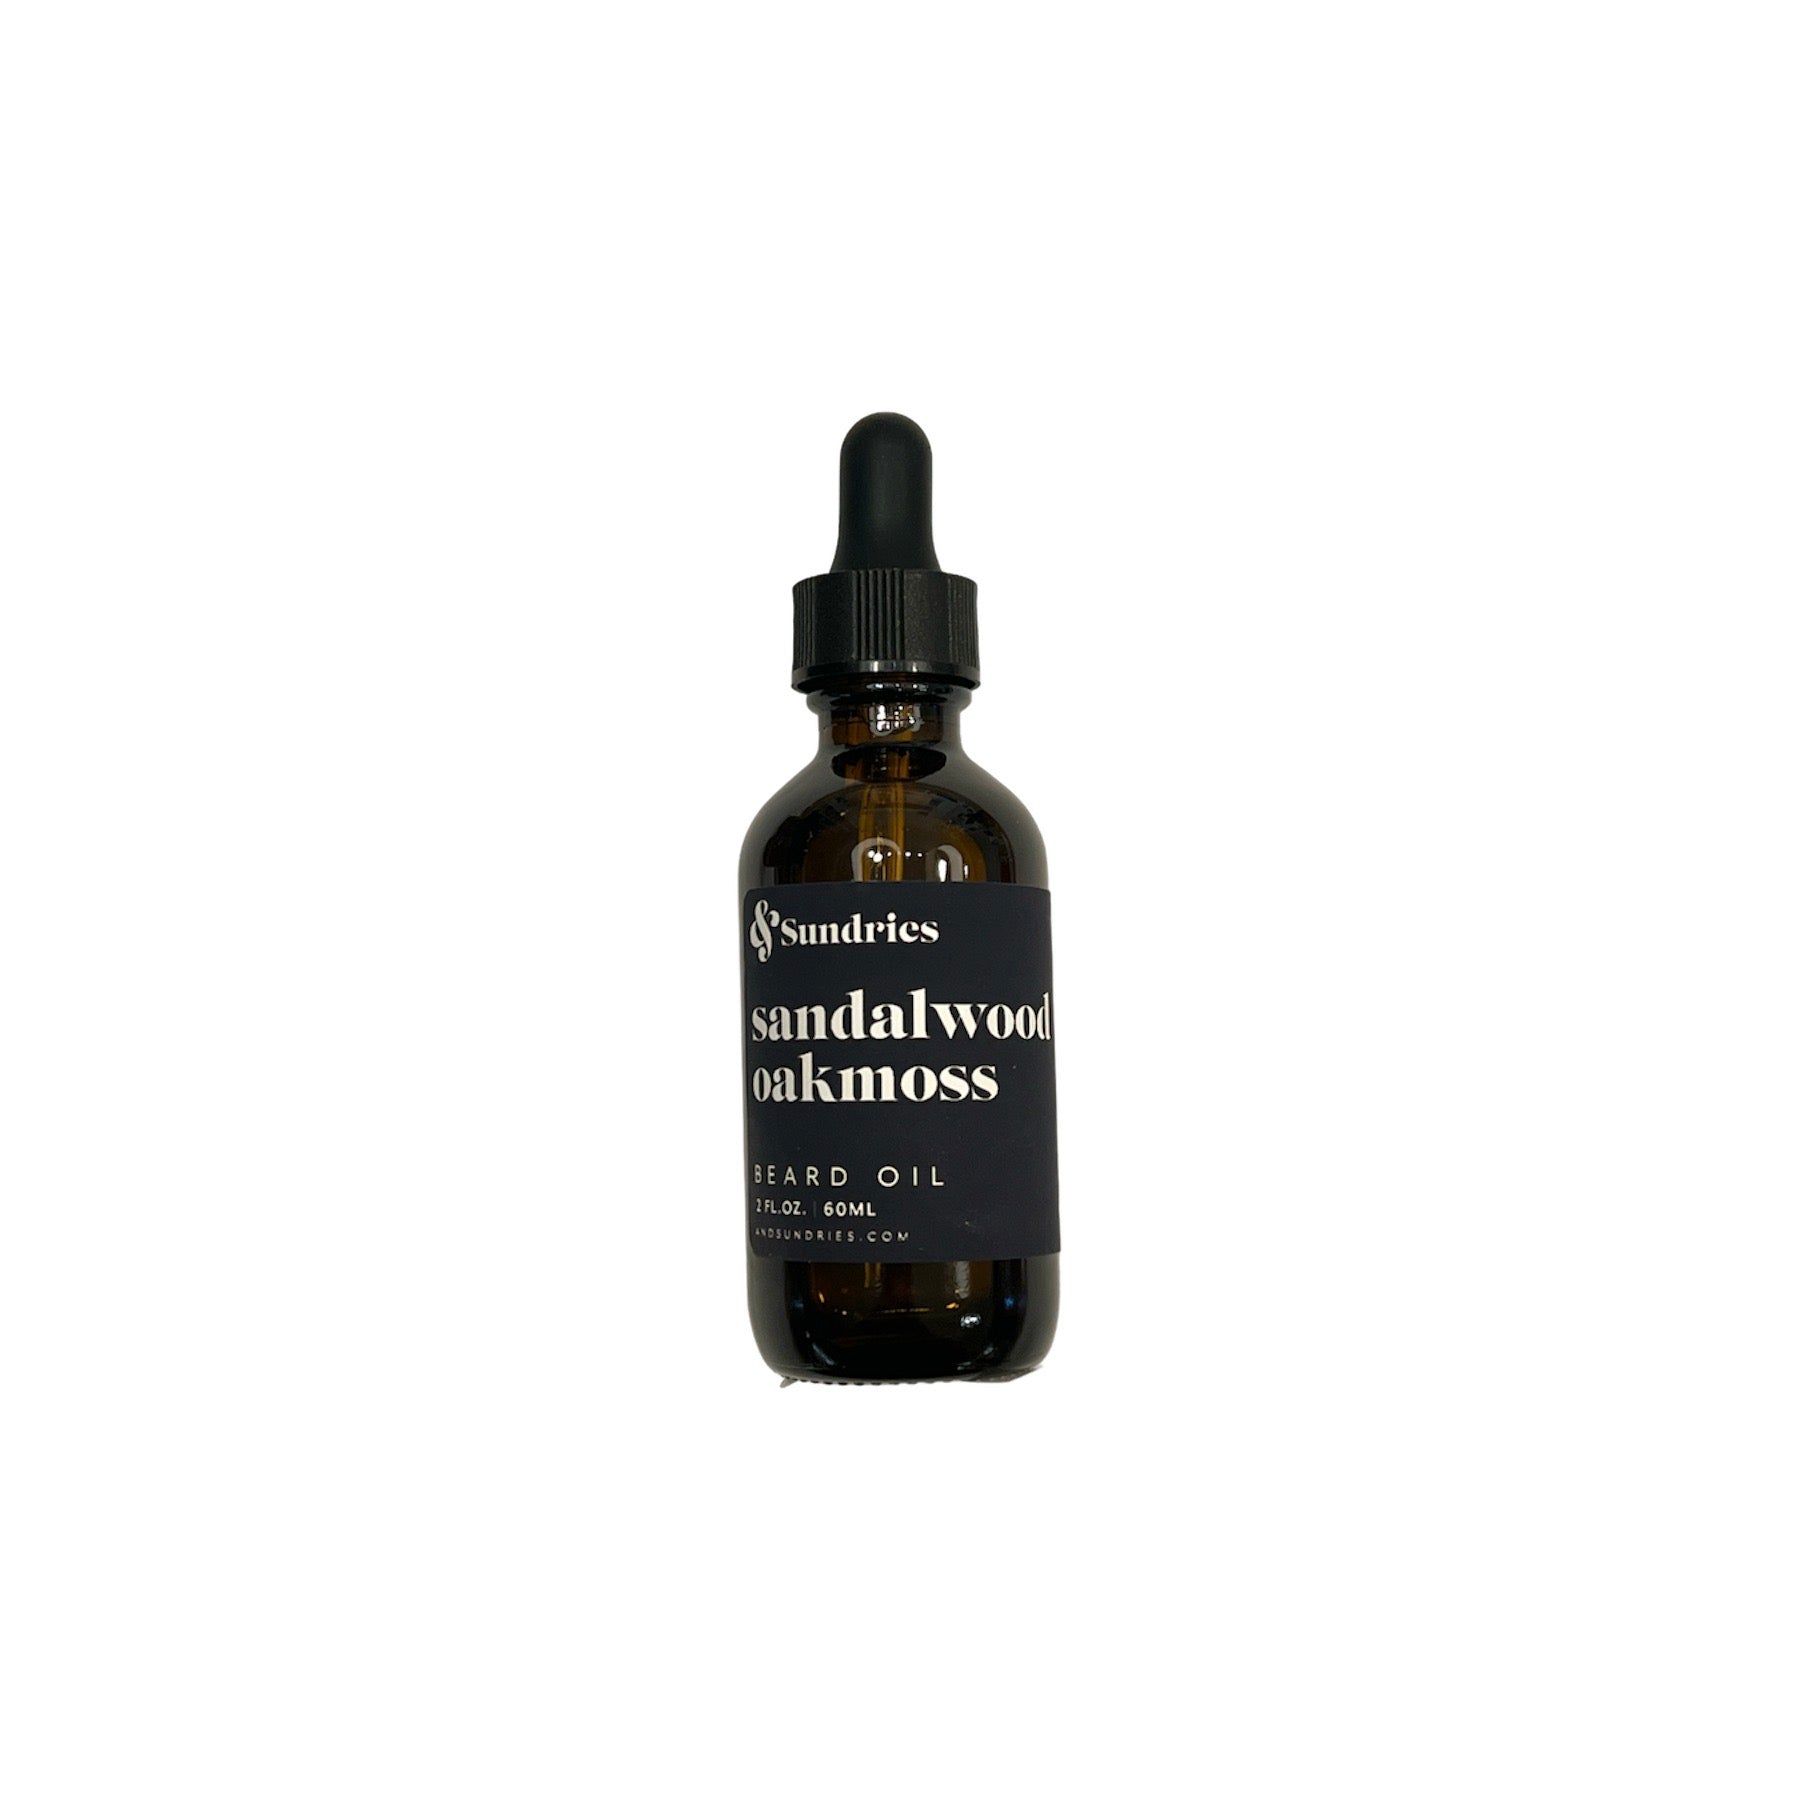 Sandalwood Oakmoss Beard Oil